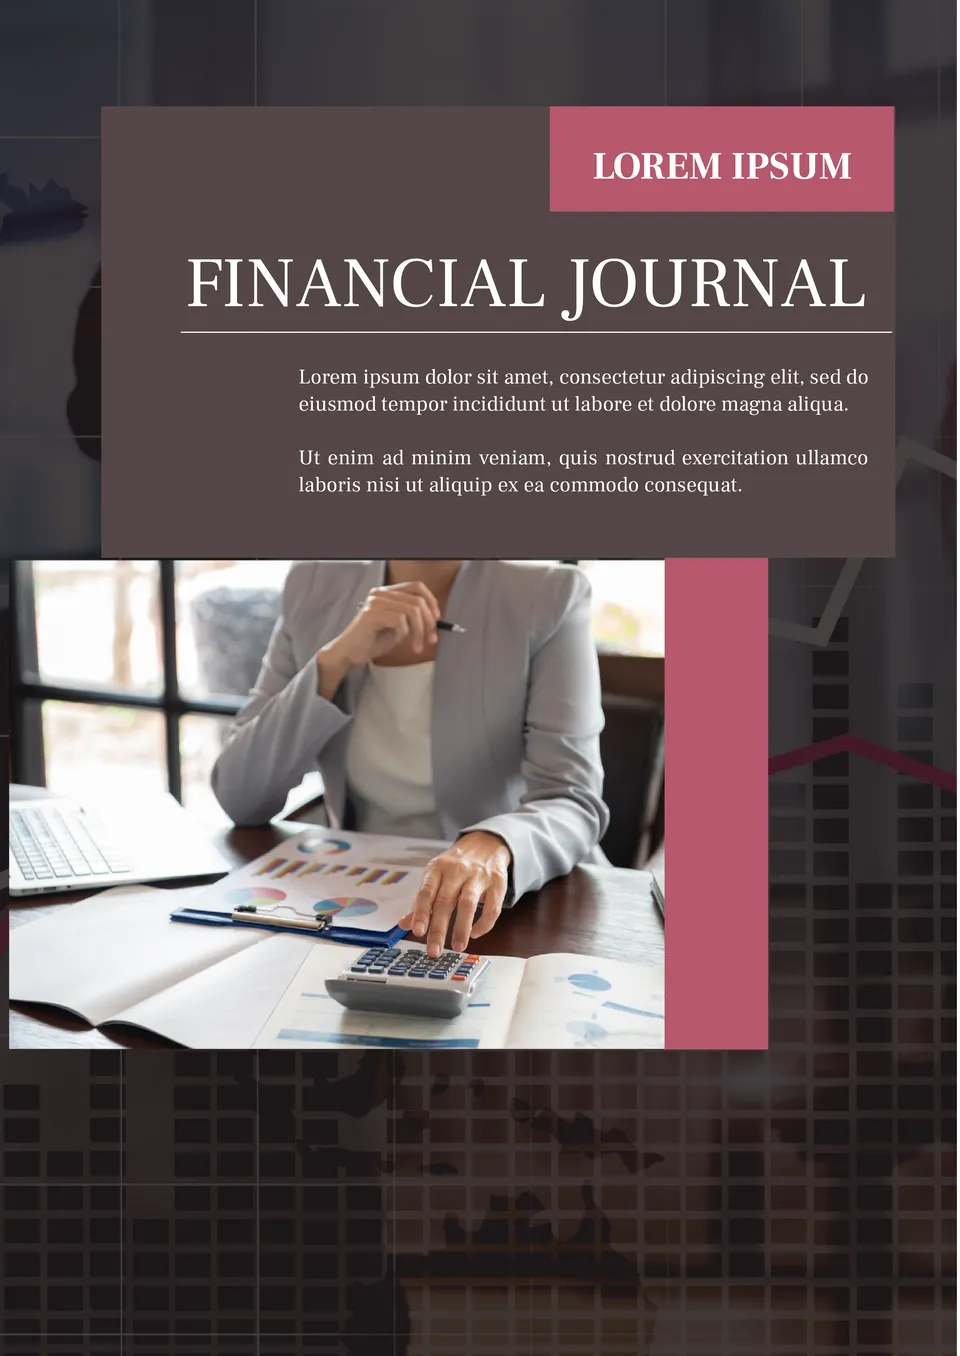 Financial journal